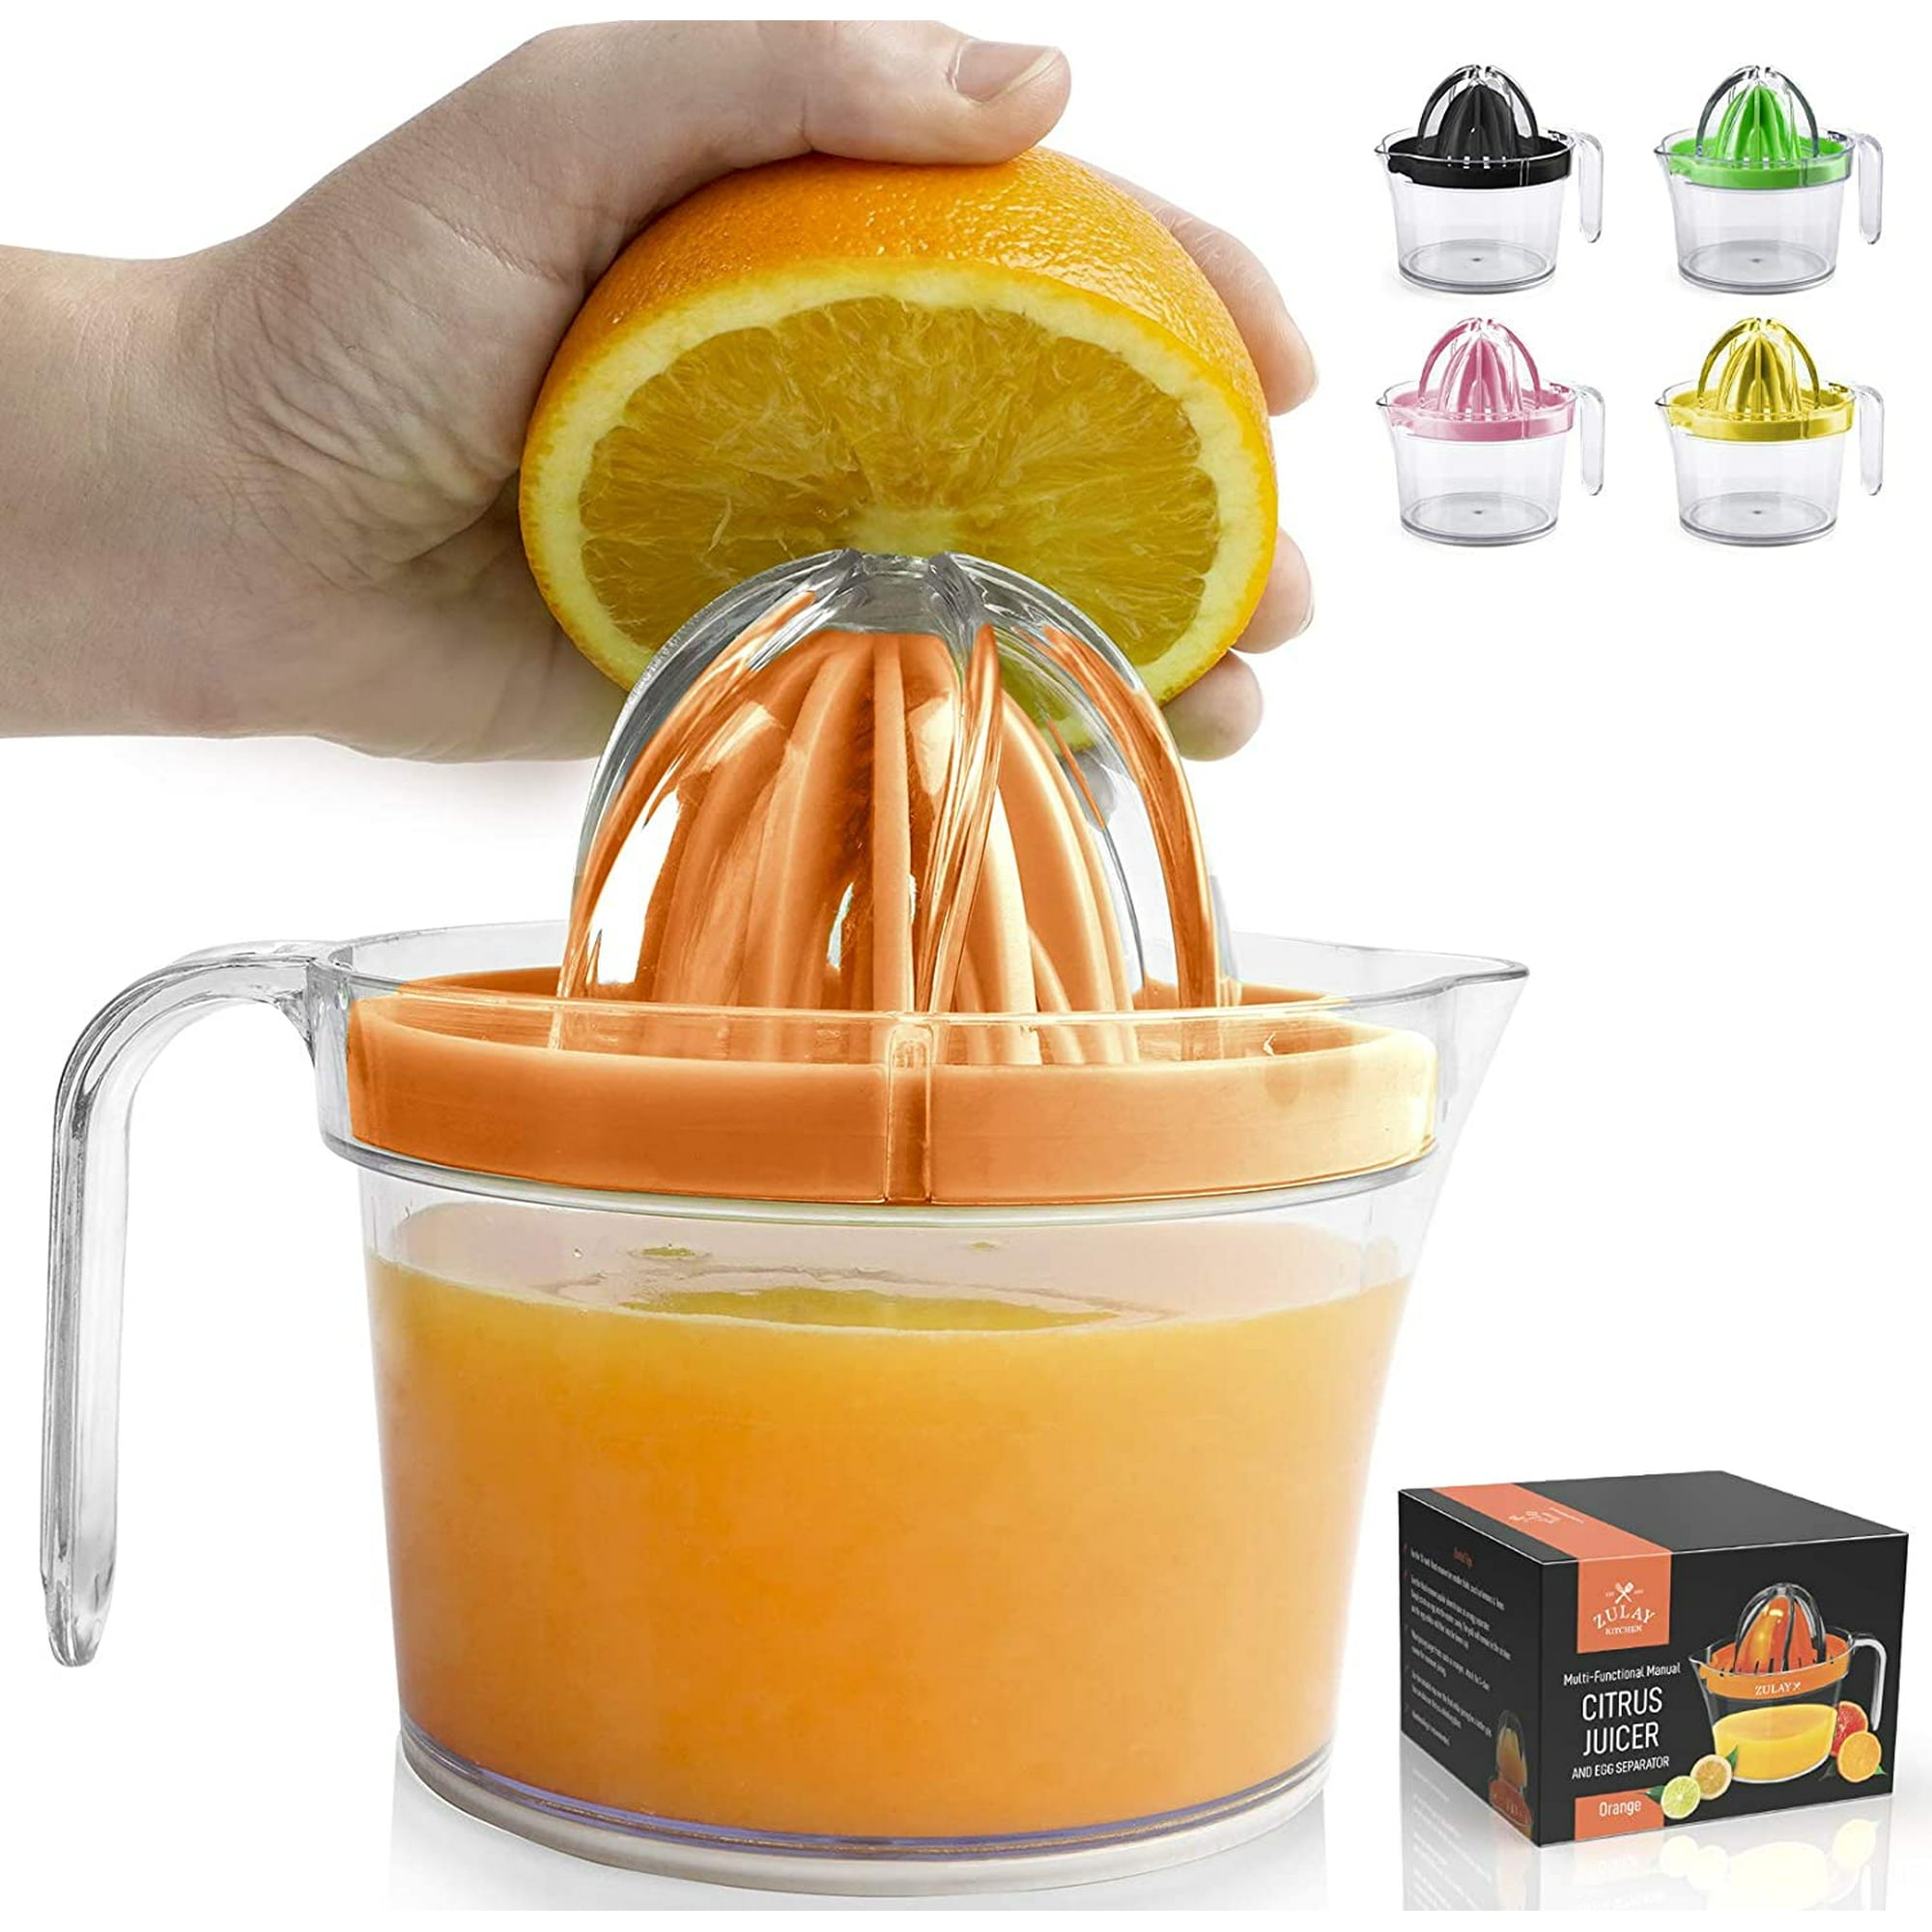 Zulay Kitchen 3-in-1 Citrus Juicer Reamer Cup 17oz Lemon Squeezer Orange Juicer Extractor Orange